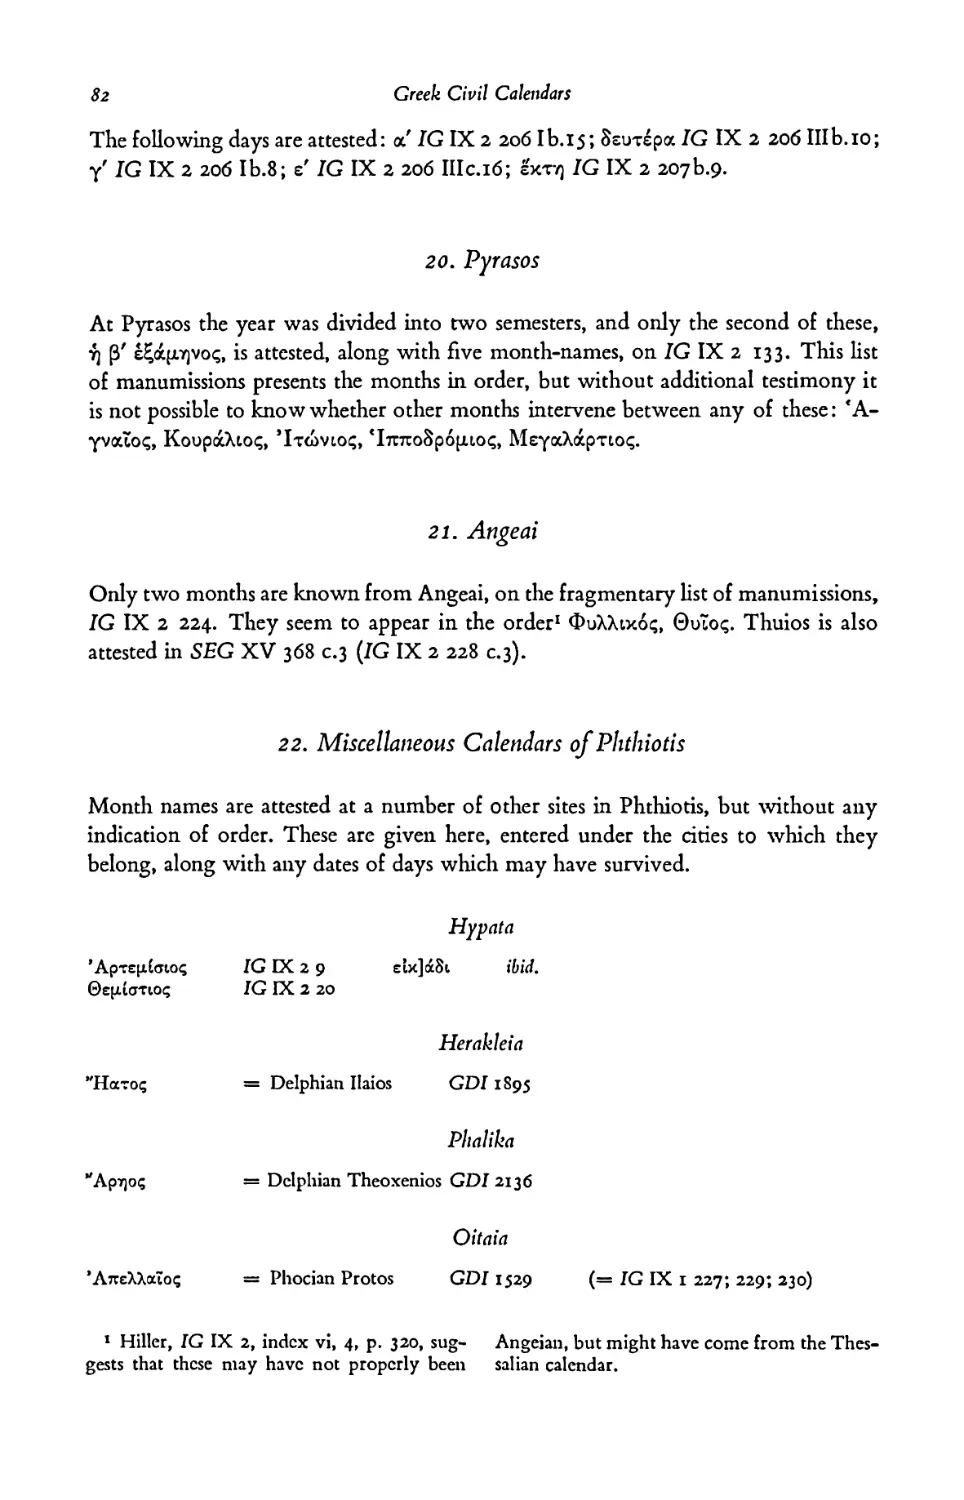 20. Pyrasos
21. Angeai
22. Miscellaneous Calendars of Phthiotis
- Herakleia
- Phalika
- Oitaia